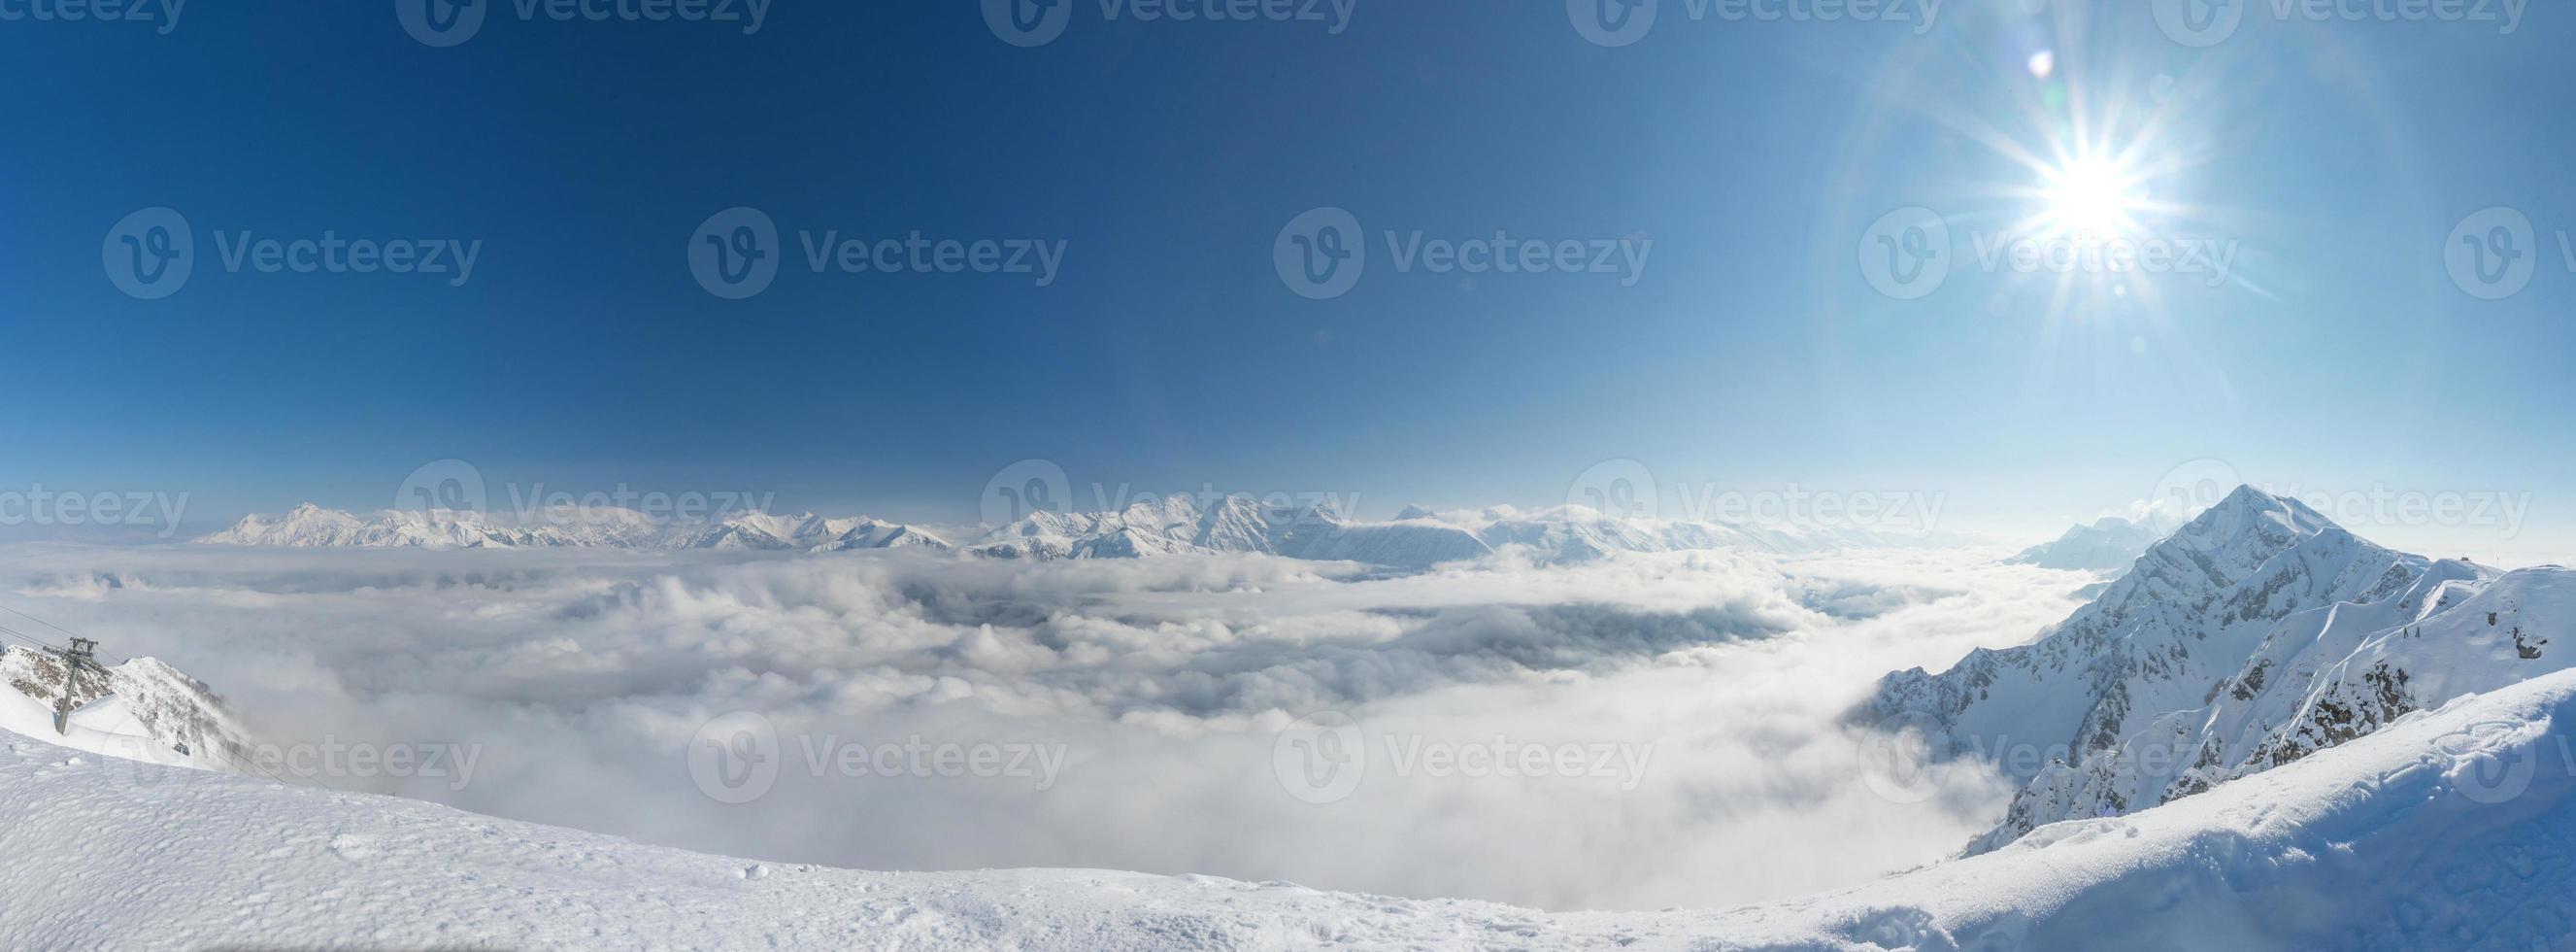 vista aérea acima das nuvens. estância de esqui rosa khutor, montanhas cobertas pela neve em krasnaya polyana, na Rússia. foto